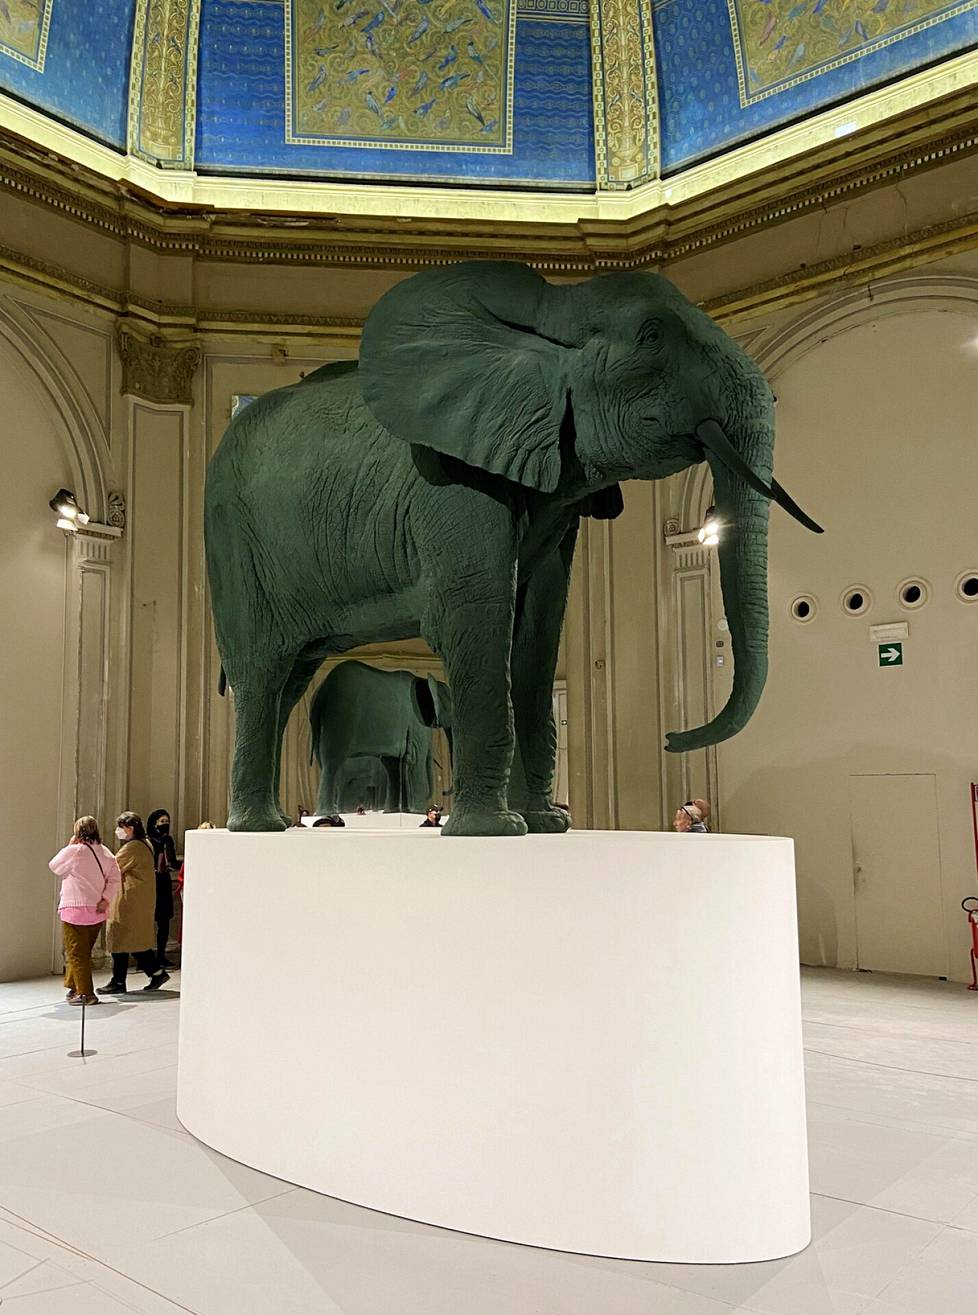 Katarina Fritschin Elefantin tummanvihreä, keinotekoinen väri tekee siitä epätodellisen.